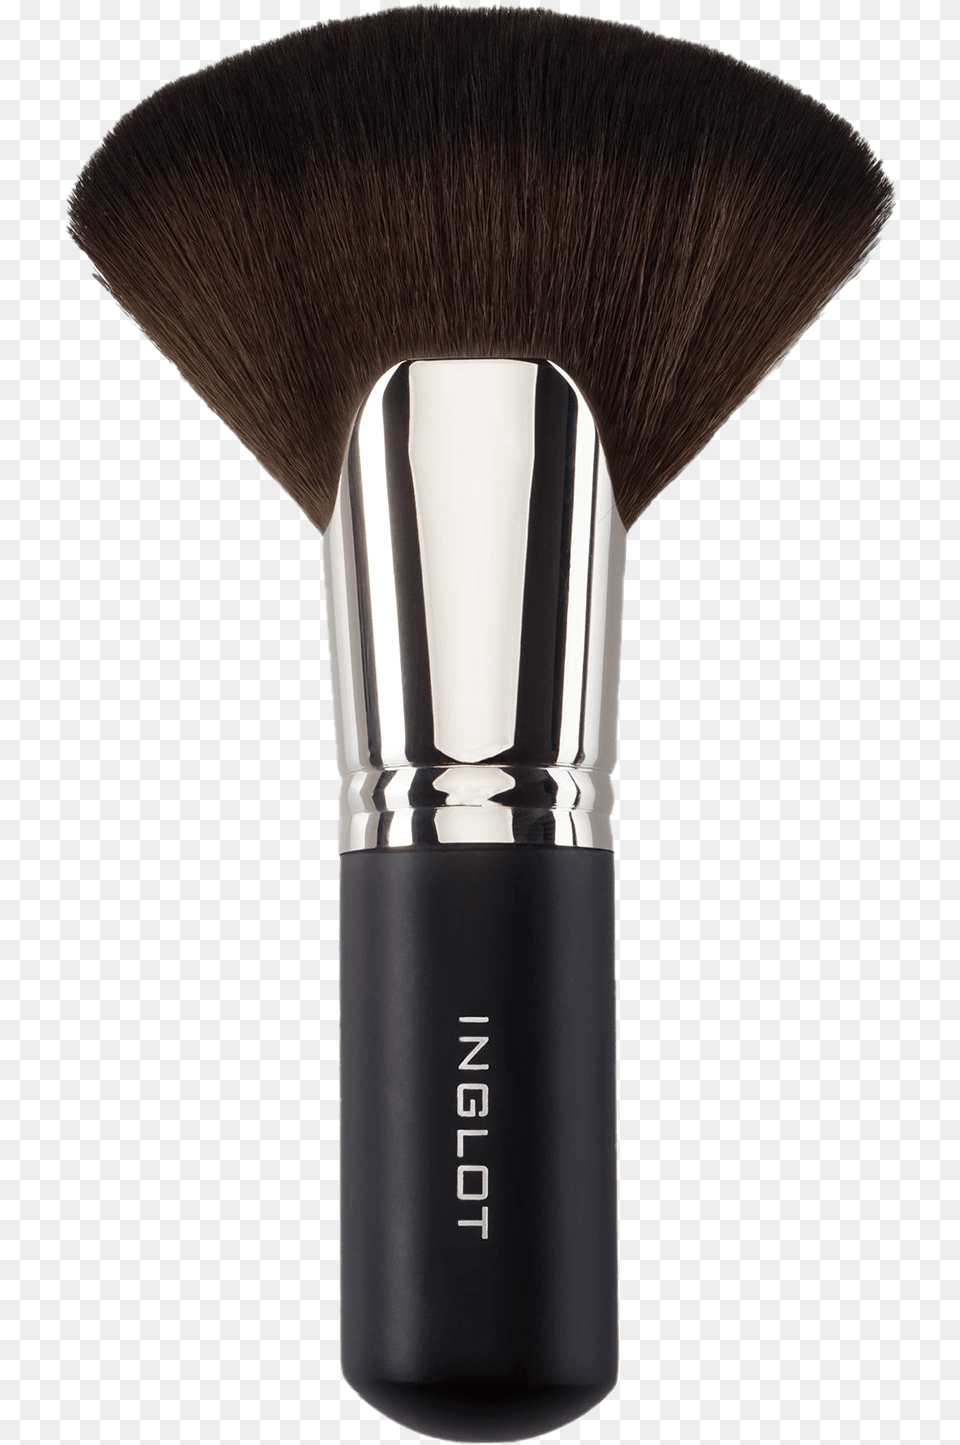 Makeup Brush Image Hd Inglot Make Up Brush, Device, Tool Free Transparent Png